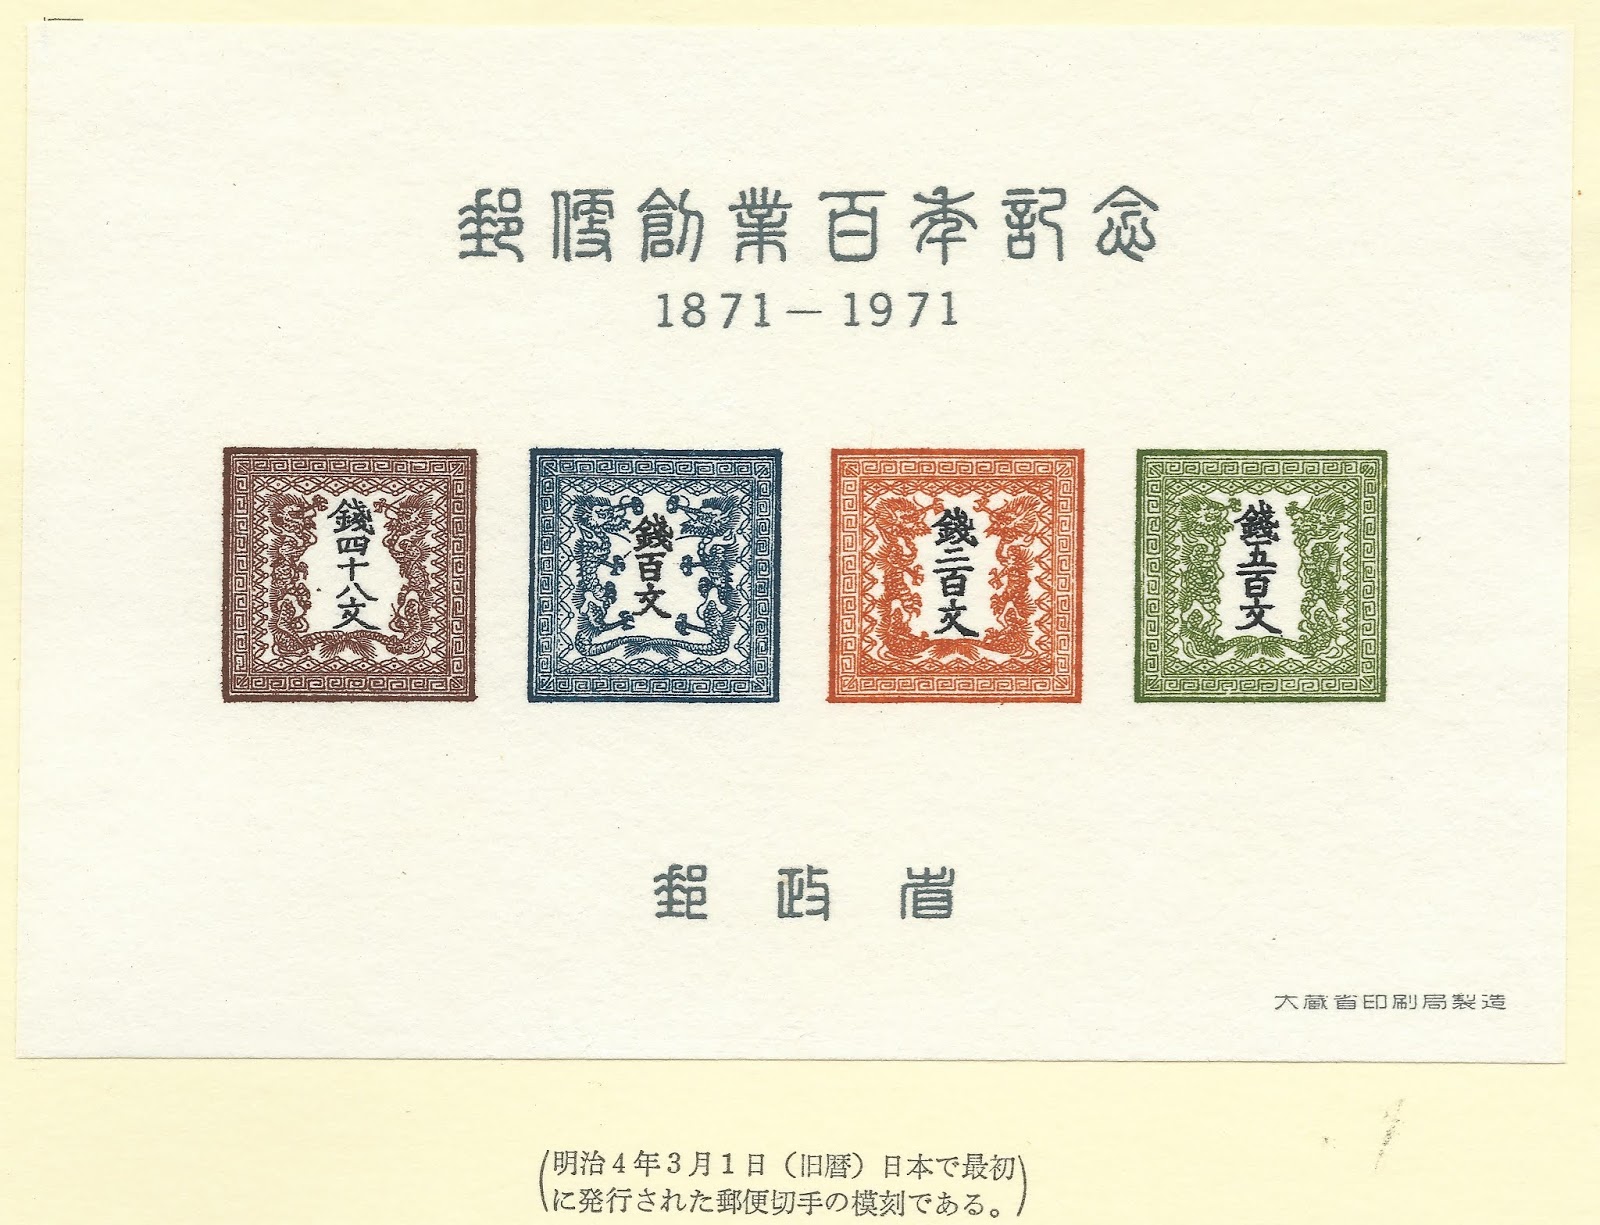 切手収集・フィラテリックノート: 郵便創業百年記念・龍文切手模刻は、1版1番の切手の正確な模刻